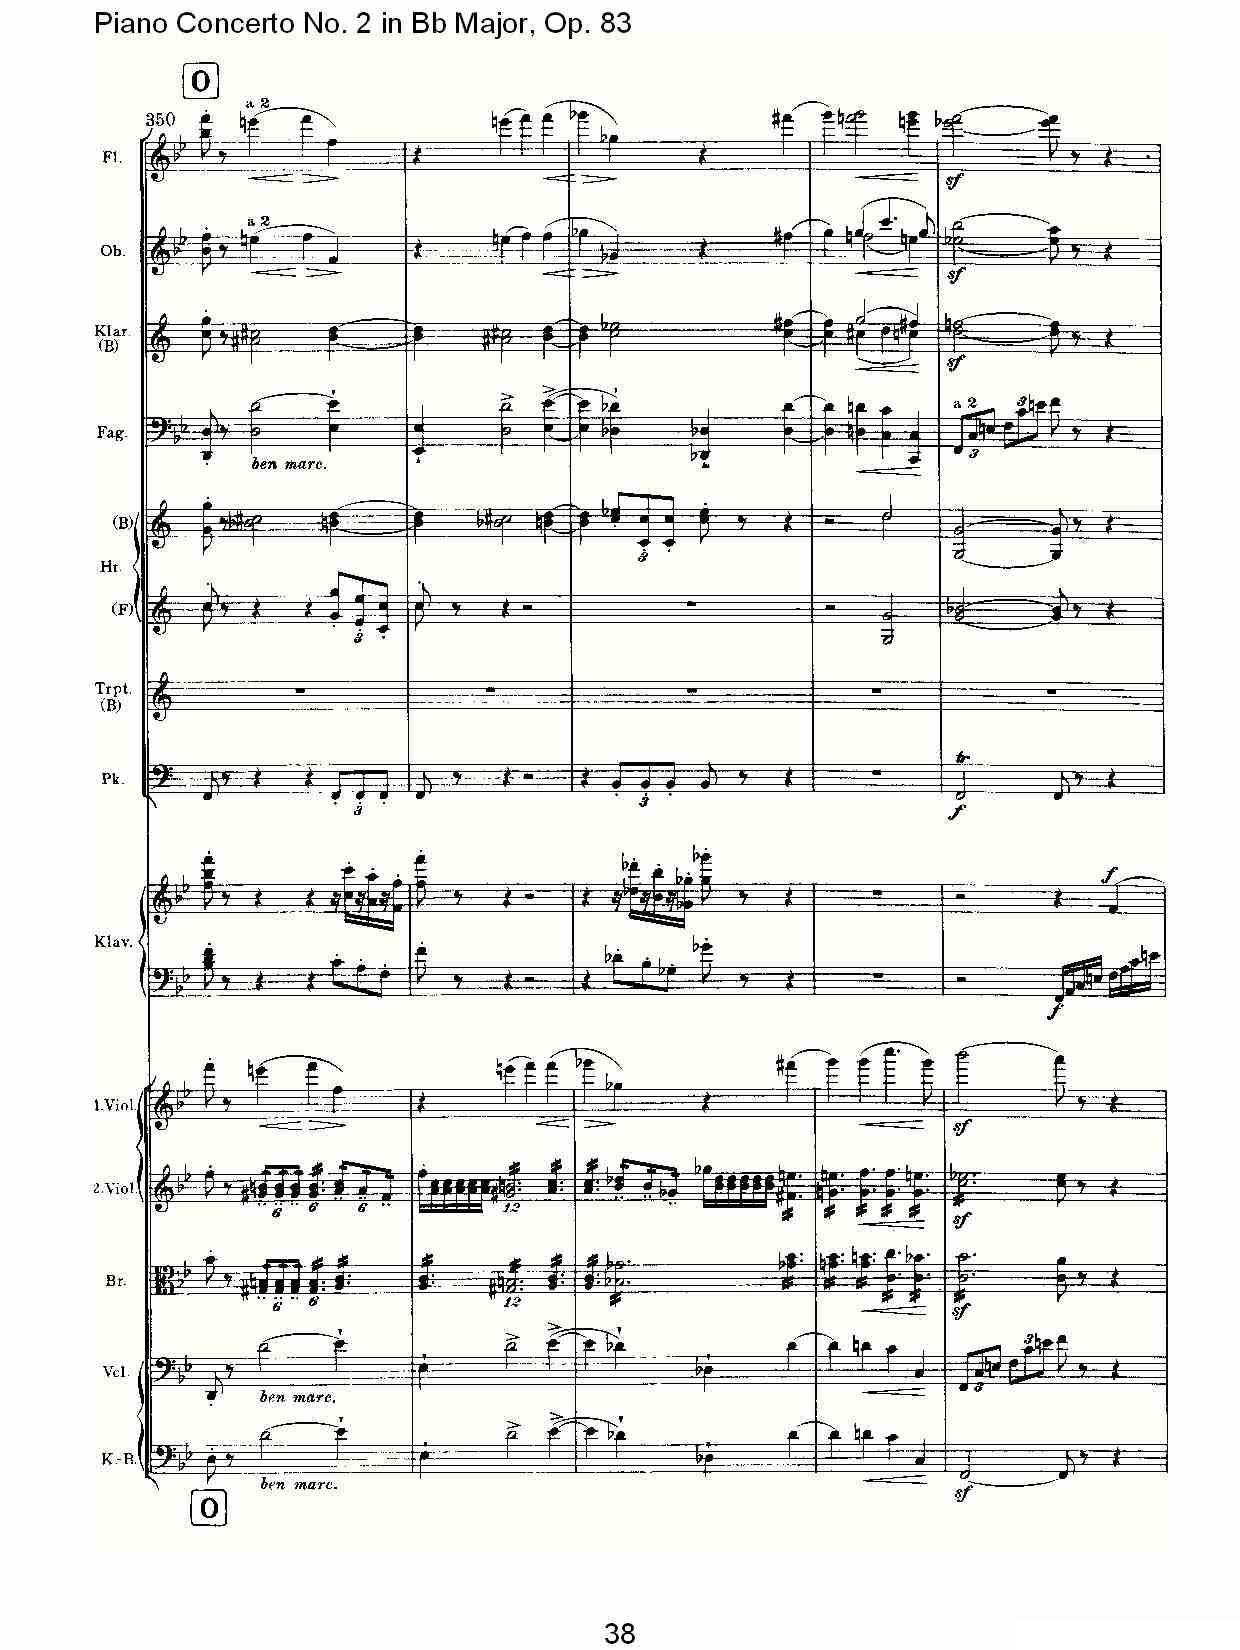 Bb大调钢琴第二协奏曲, Op.83第一乐章（二）钢琴曲谱（图8）